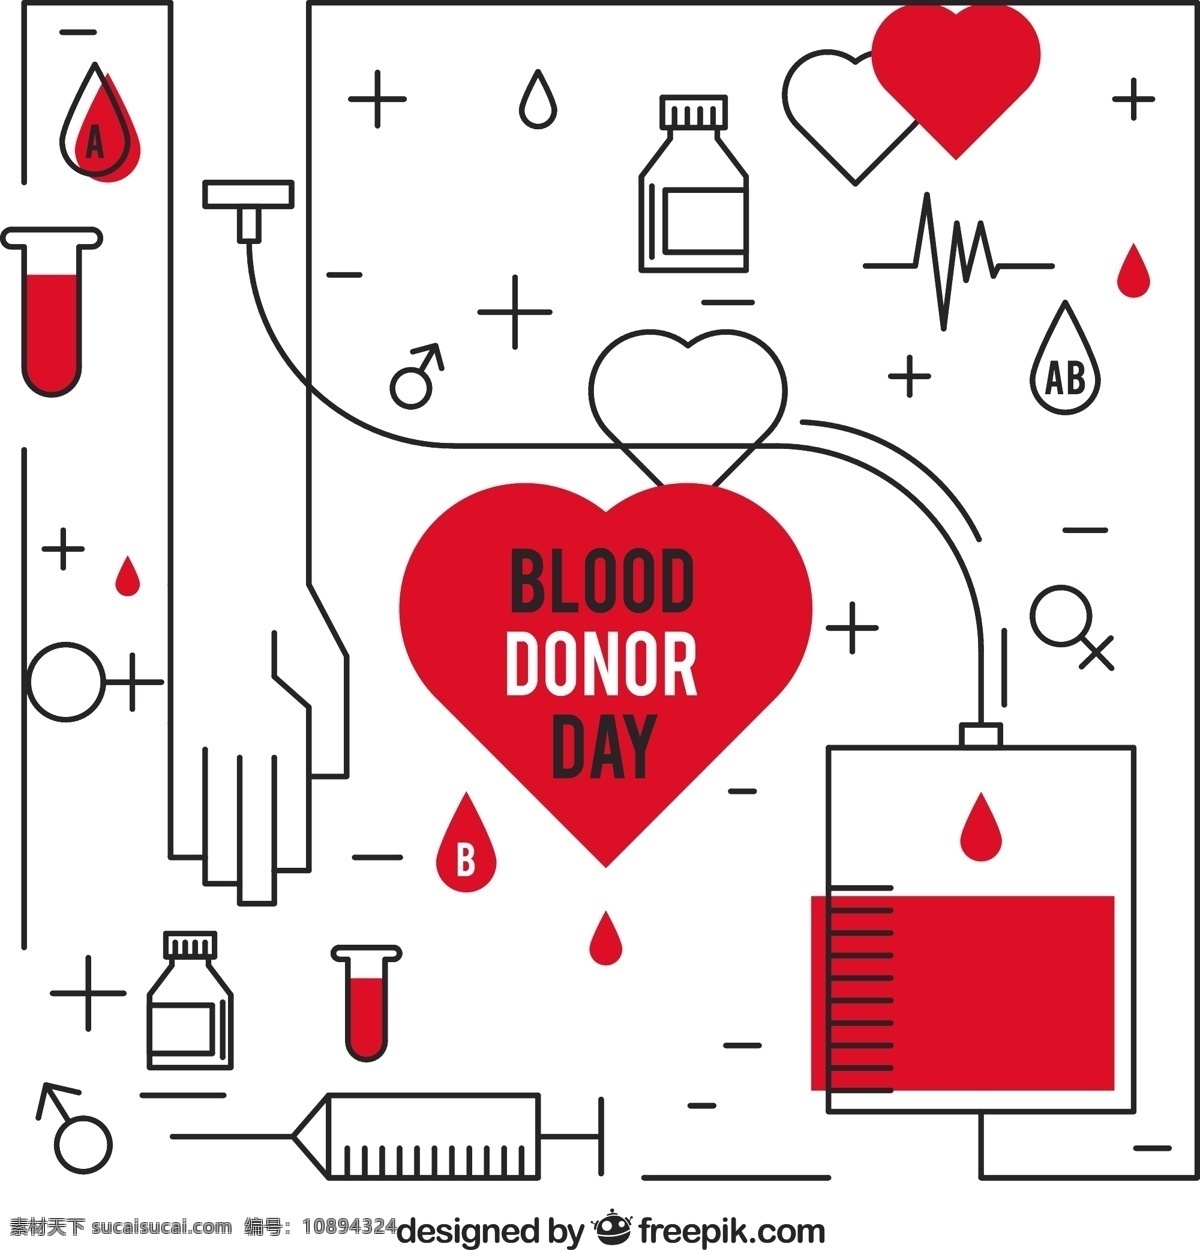 线性 背景 献血 人民 心脏 医疗 世界 健康 医院 医学 血液 慈善 下降 帮助 实验室 生活 护理 急救 捐赠